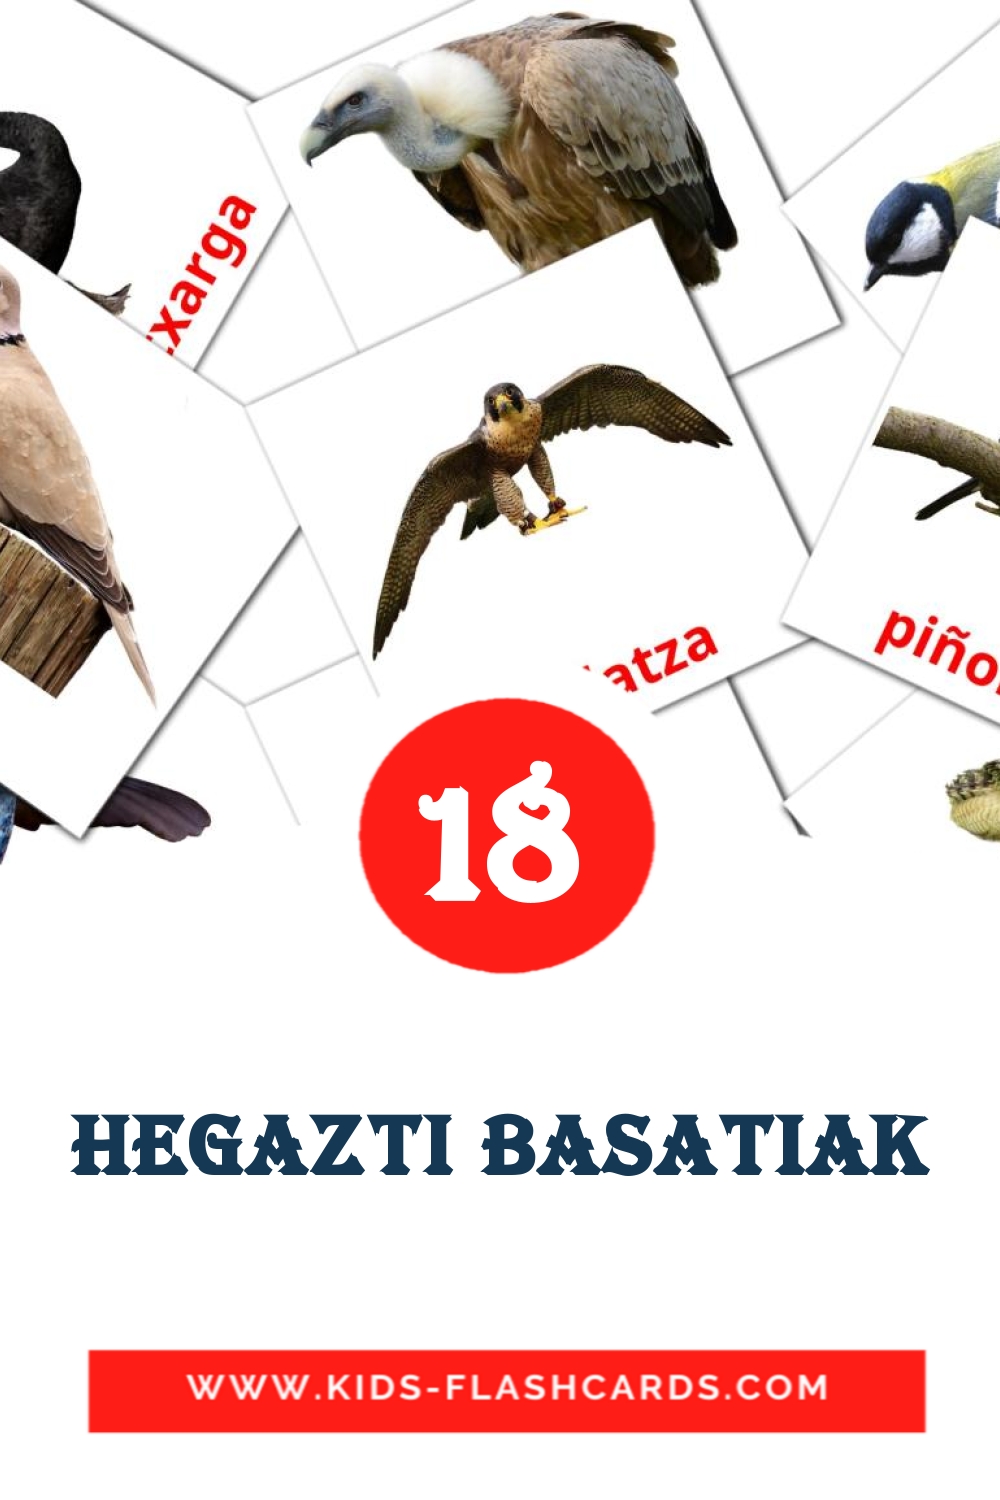 18 Hegazti basatiak fotokaarten voor kleuters in het baskisch